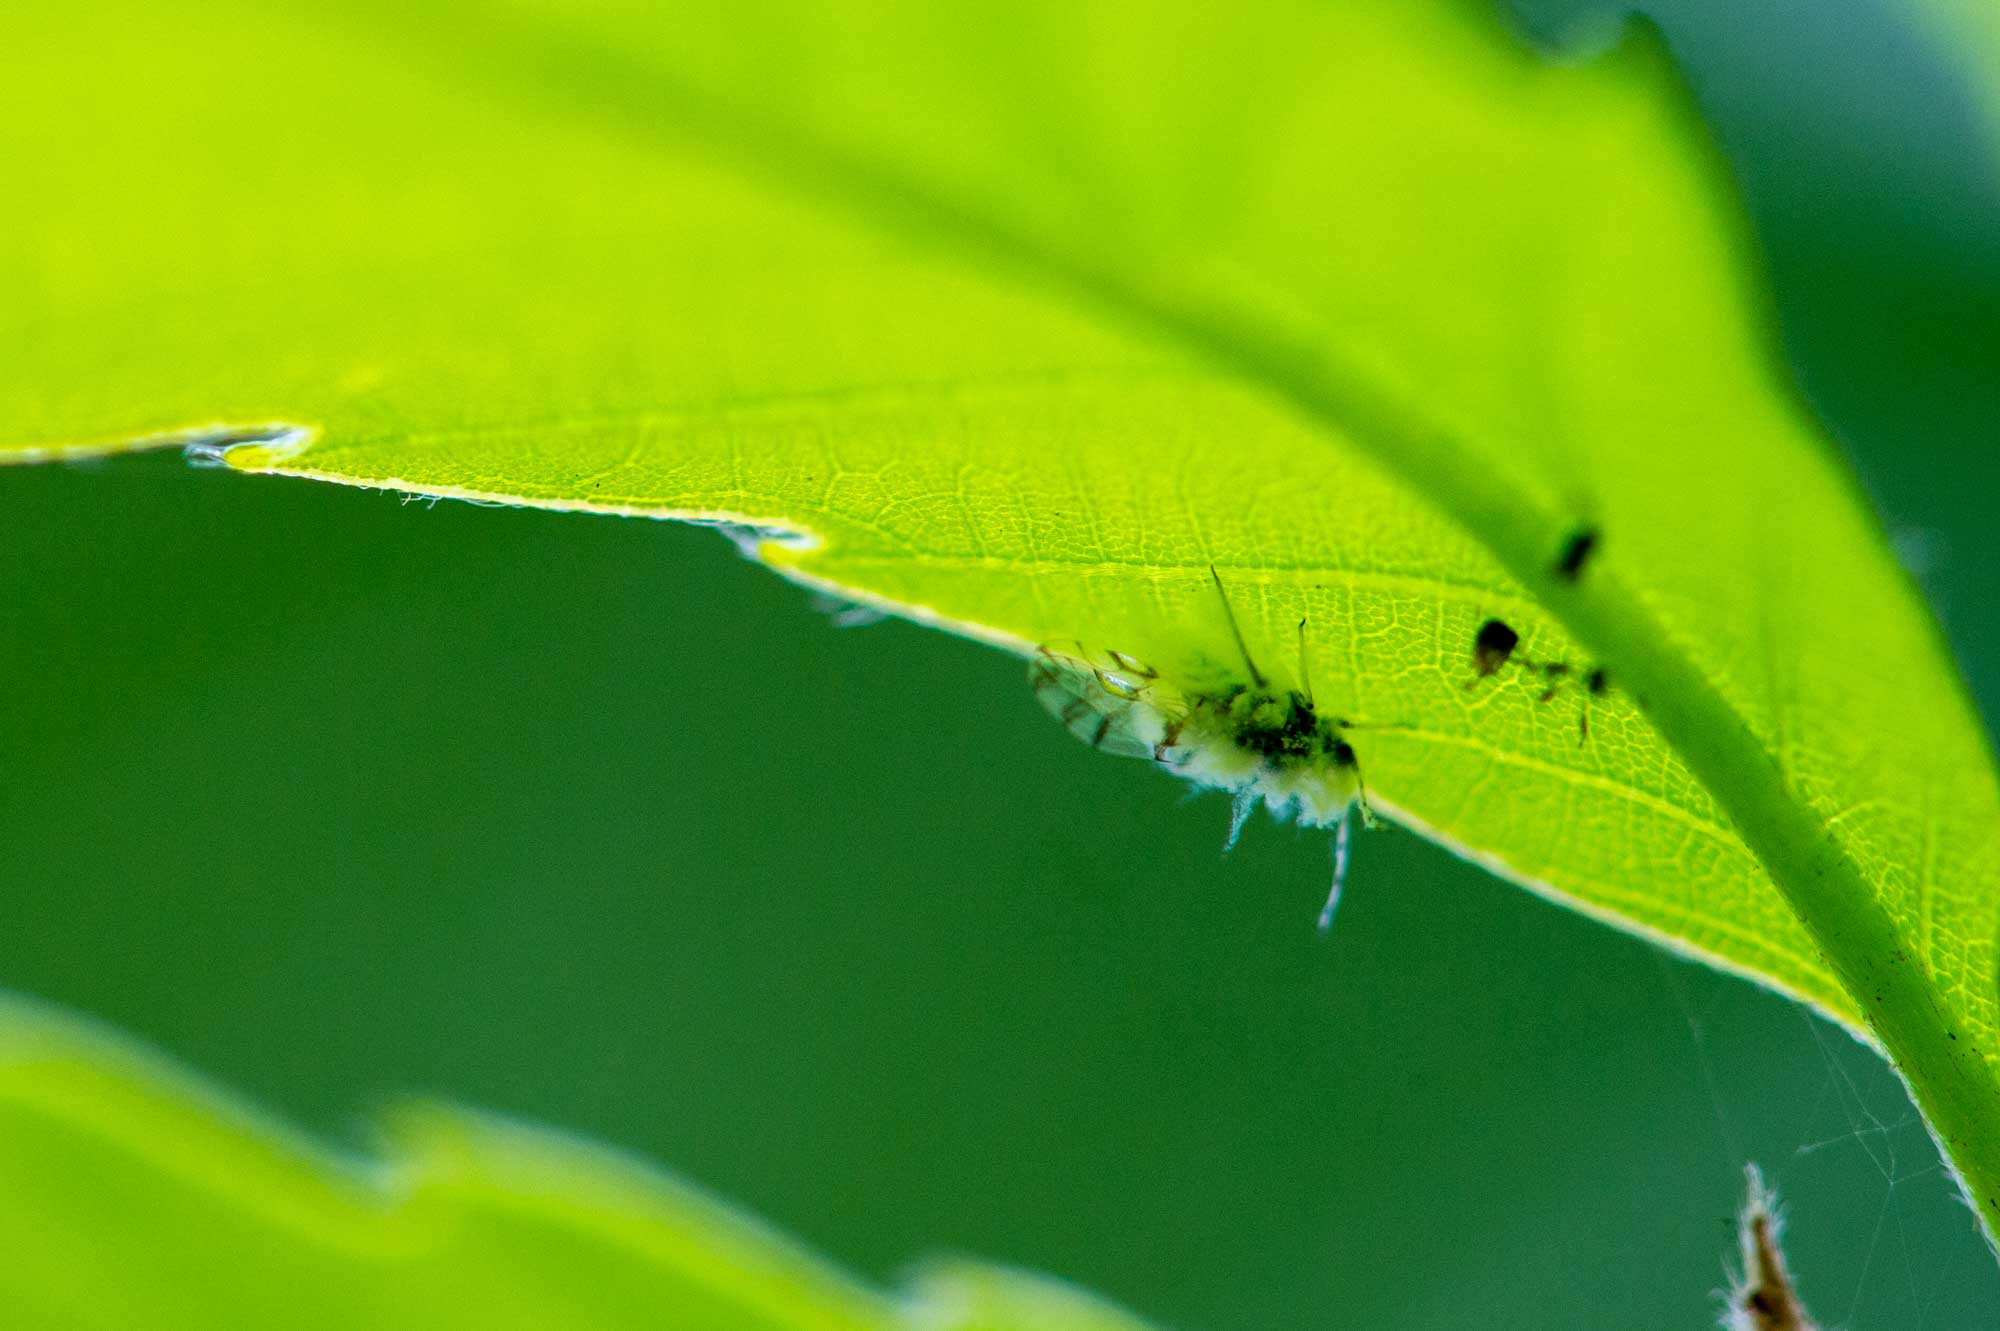 雪虫と呼ばれるふわふわの昆虫 エノキワタアブラムシを写真で紹介 虫の写真と生態なら昆虫写真図鑑 ムシミル